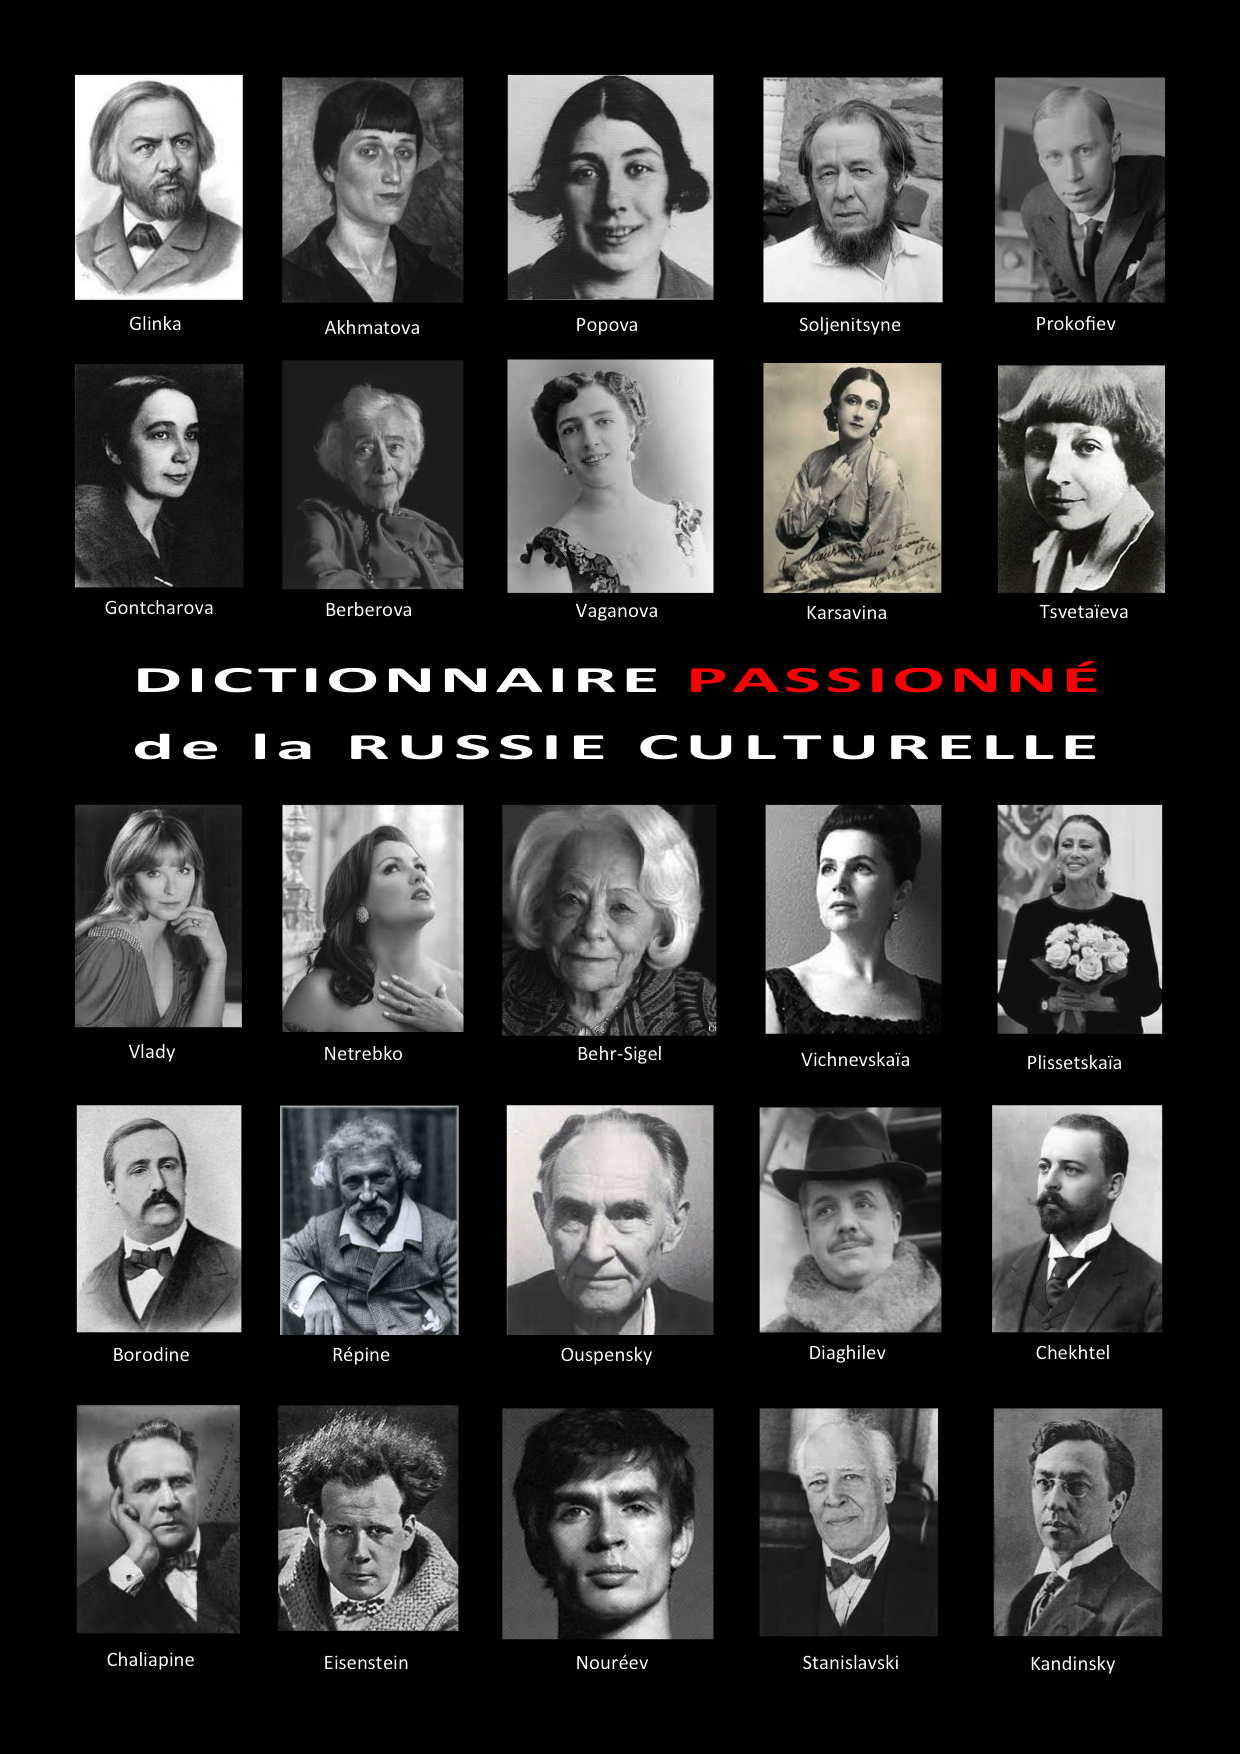 Dictionnaire passionné de la Russie culturelle.